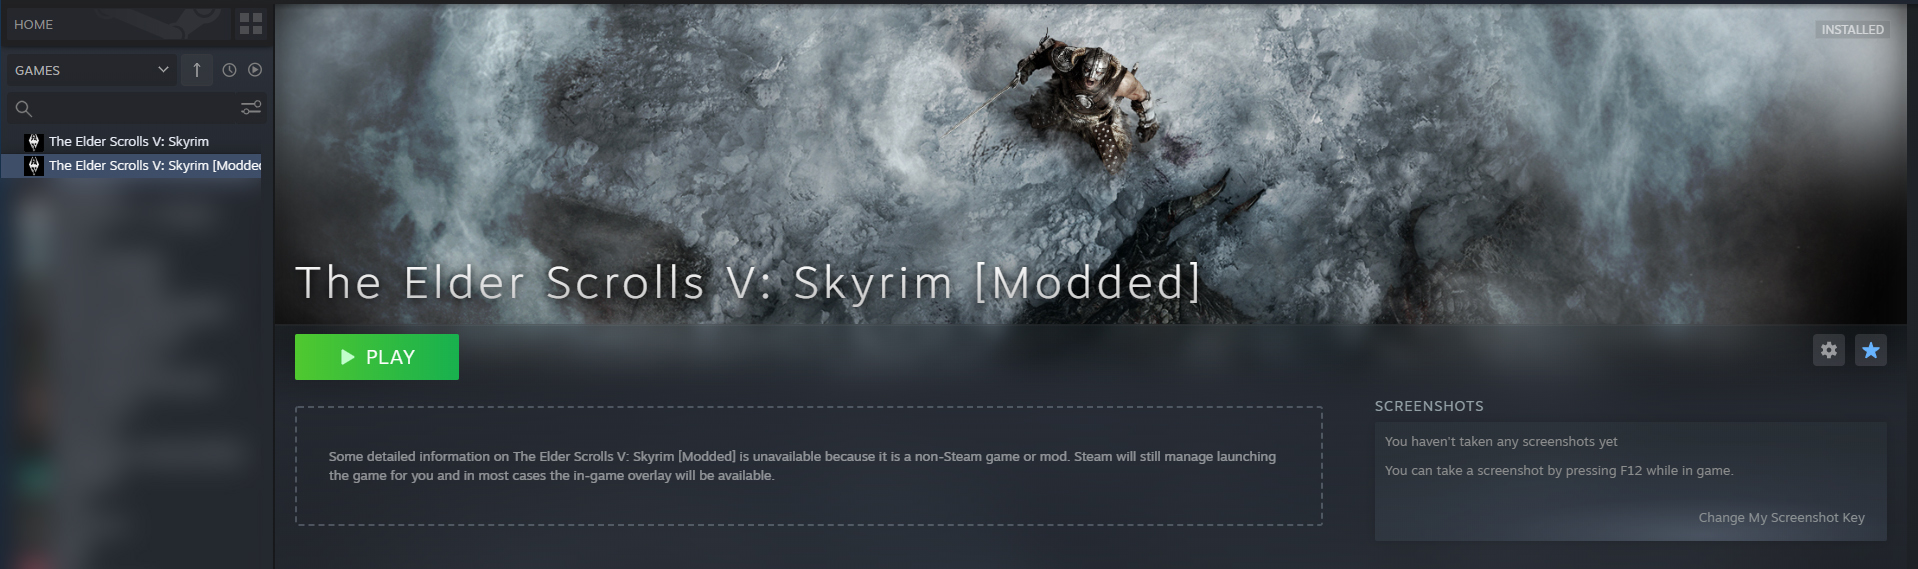 skse_loader: Hãy xem hình ảnh về skse_loader để khám phá thế giới game Skyrim đầy thú vị và phong phú hơn. Đây là công cụ hỗ trợ tuyệt vời cho những người chơi muốn tùy chỉnh trò chơi của mình. Đừng bỏ lỡ cơ hội để tìm hiểu thêm về skse_loader và trải nghiệm Skyrim tốt hơn cùng nó.